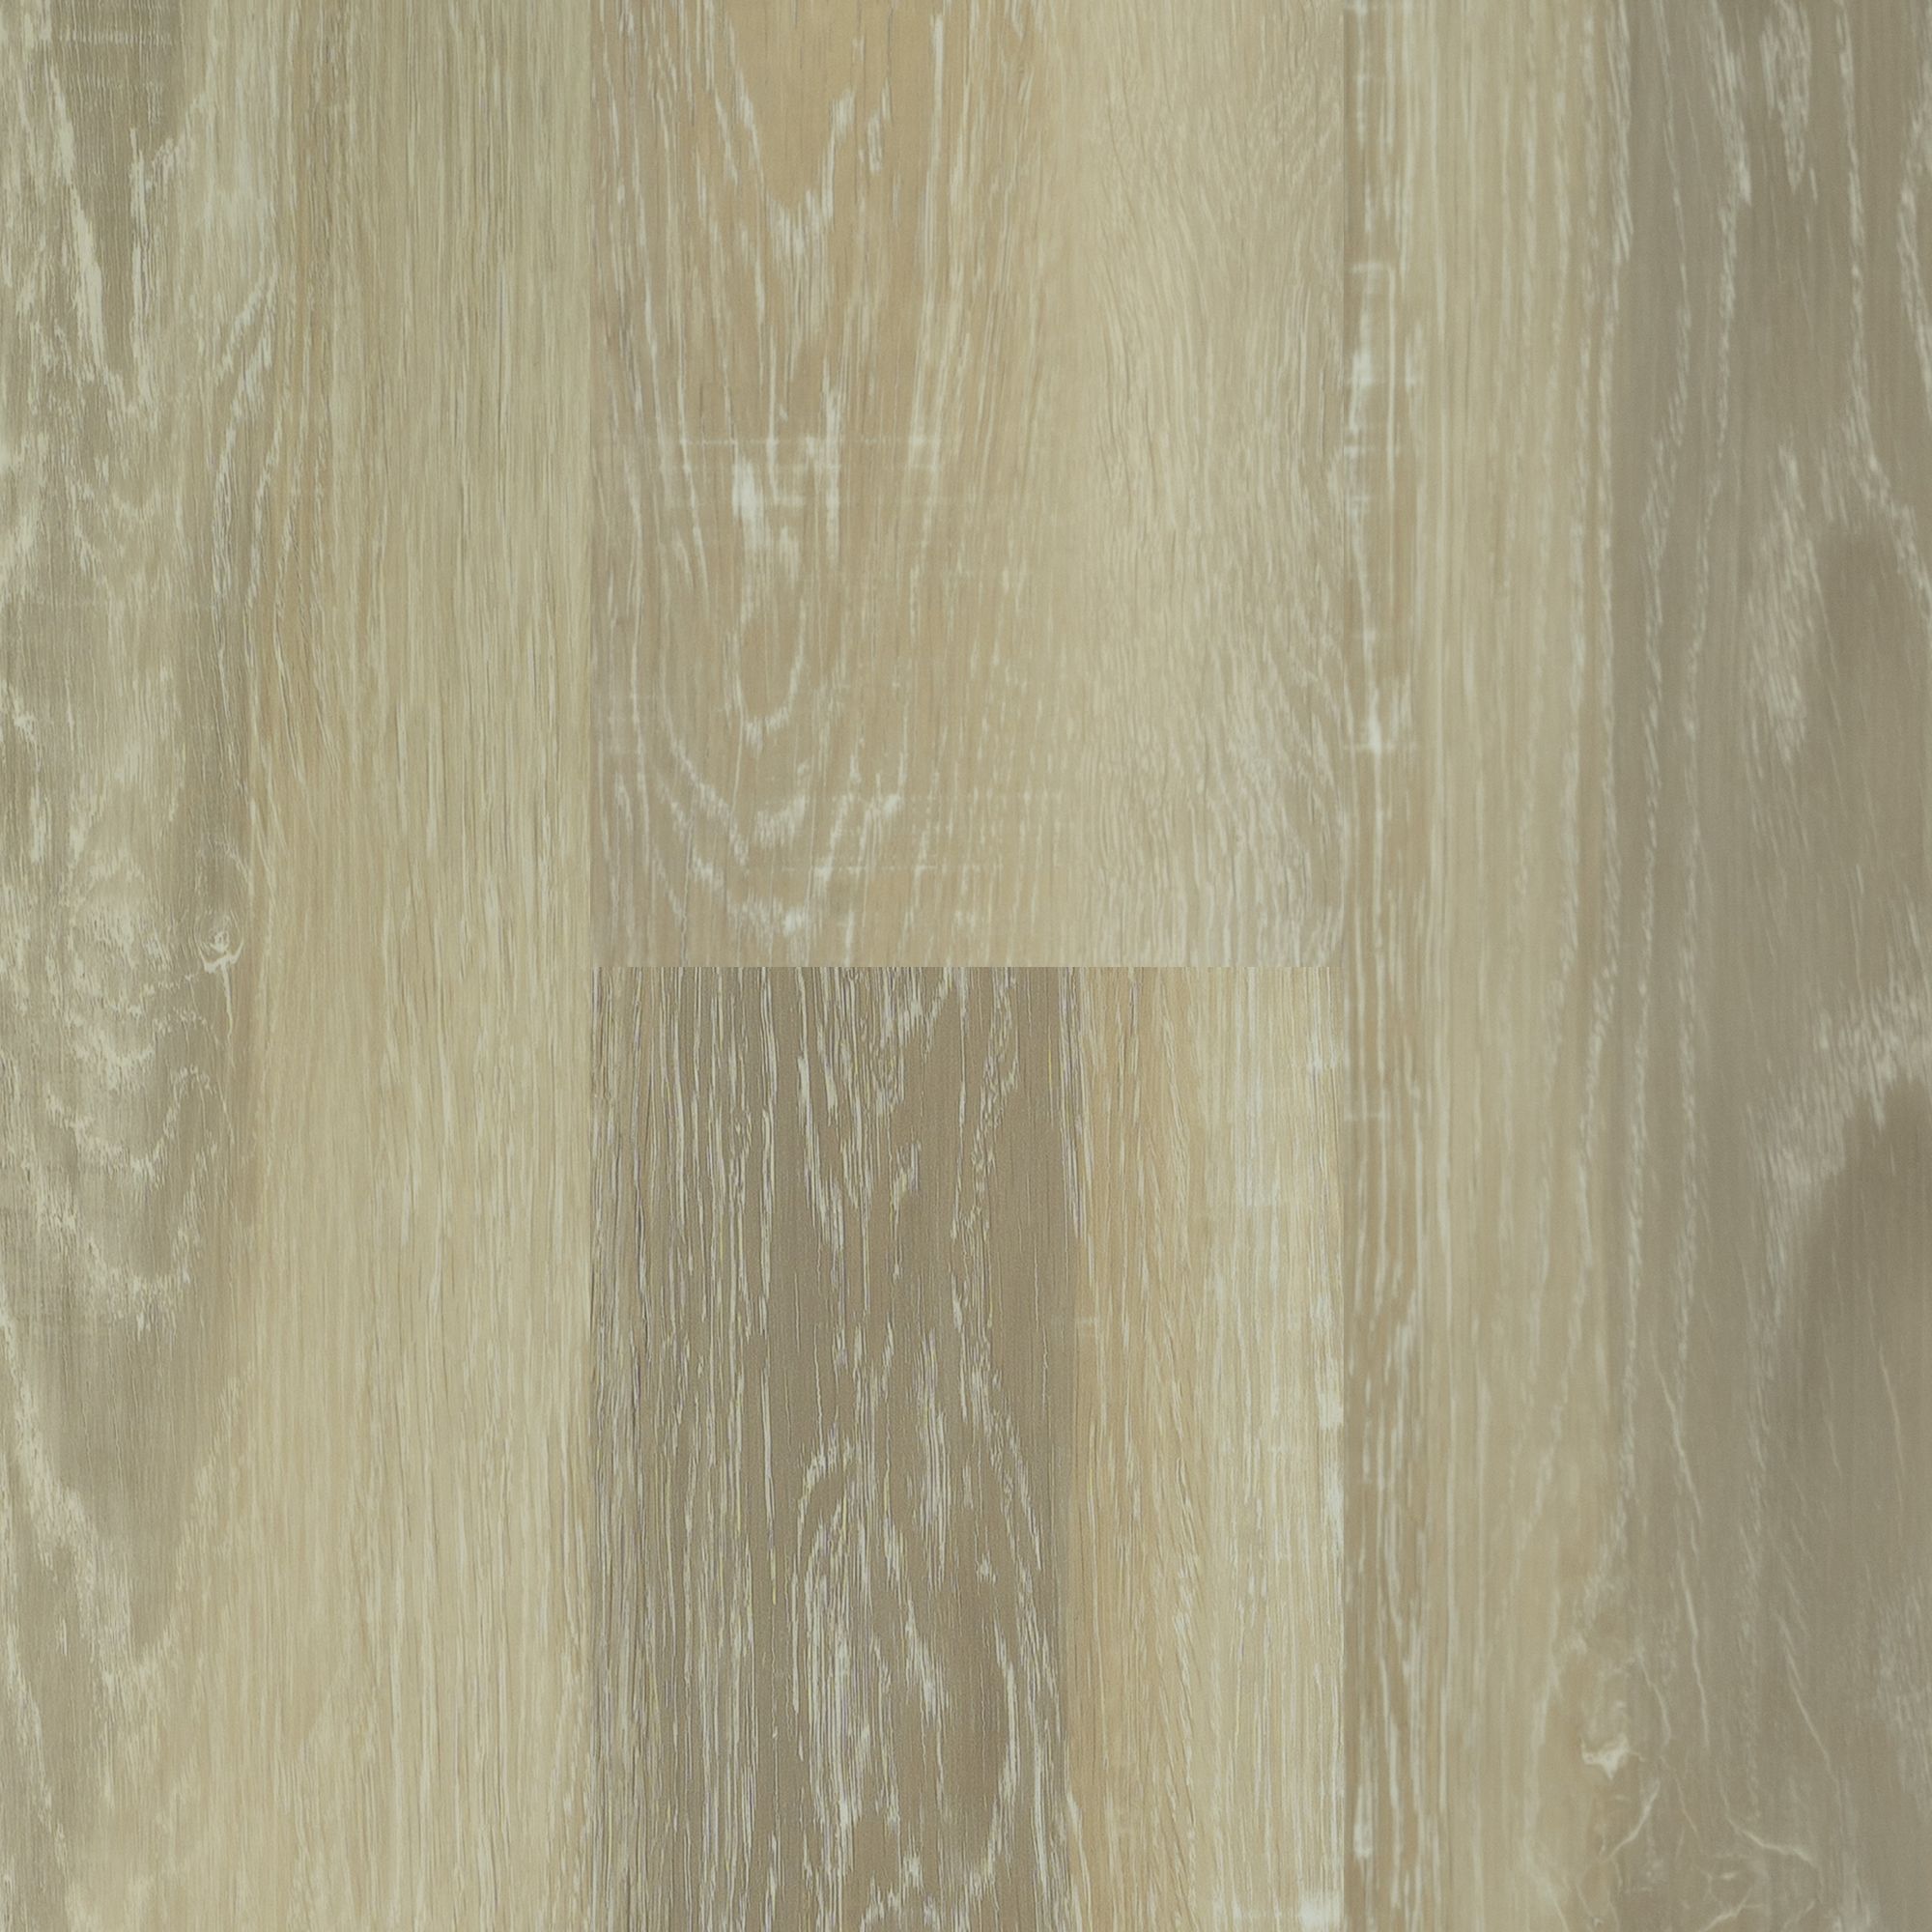 Кварц-виниловый ламинат Van Kleeck Floor Смит VKF-030 виниловый ламинат clix floor